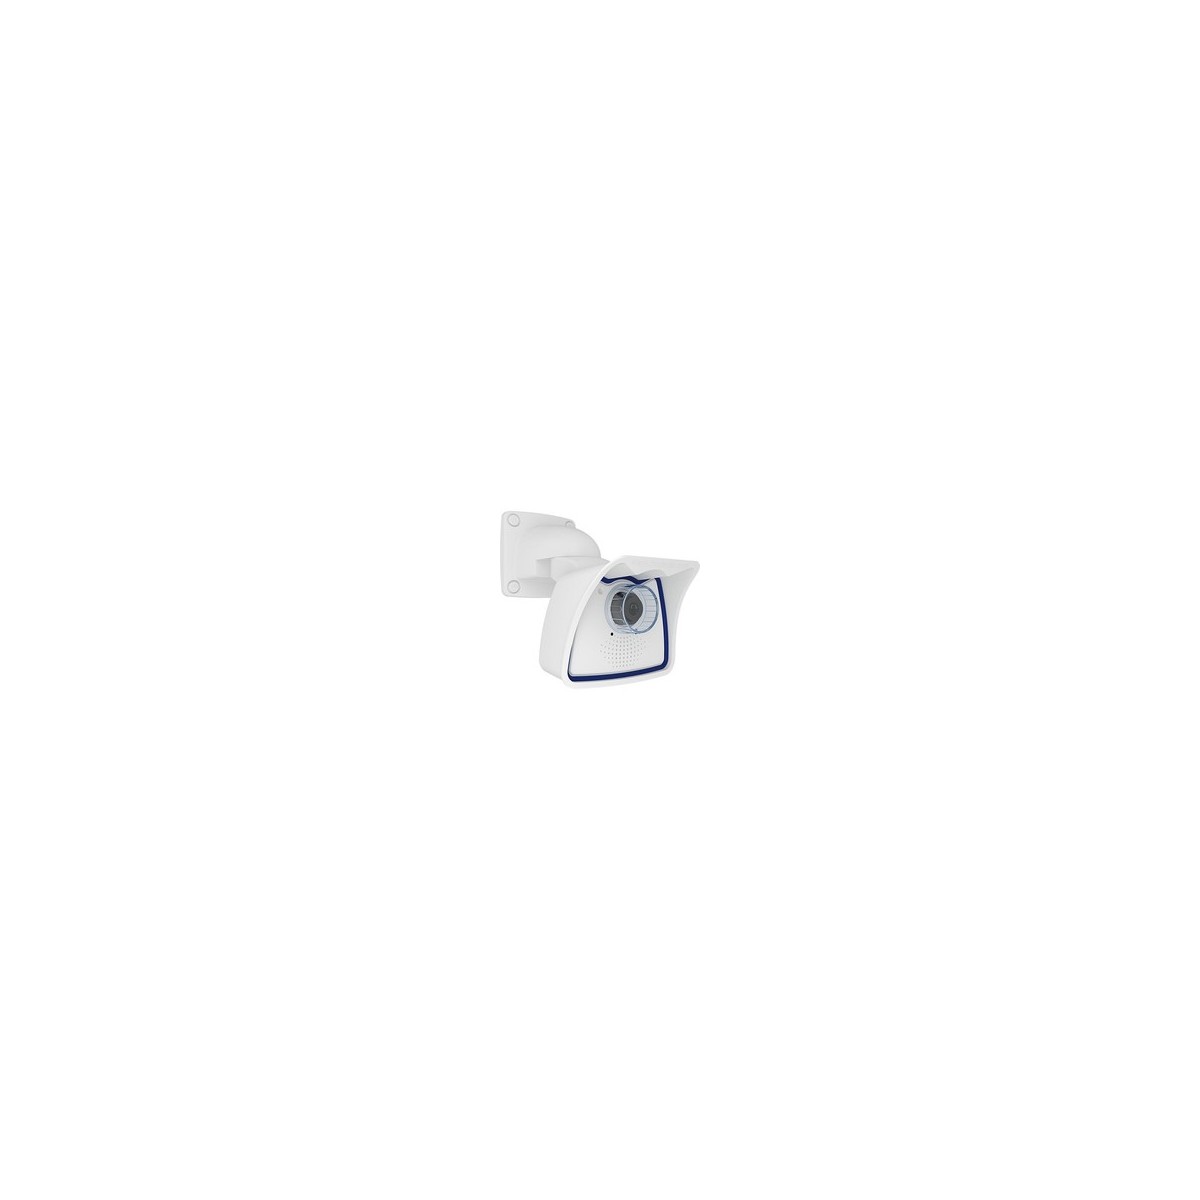 Mobotix Mx-M26B-6D079 - IP security camera - Indoor  outdoor - Wired - EN55032: 2012 EN55022: 2010 EN55024: 2010 EN50121-4: 2015